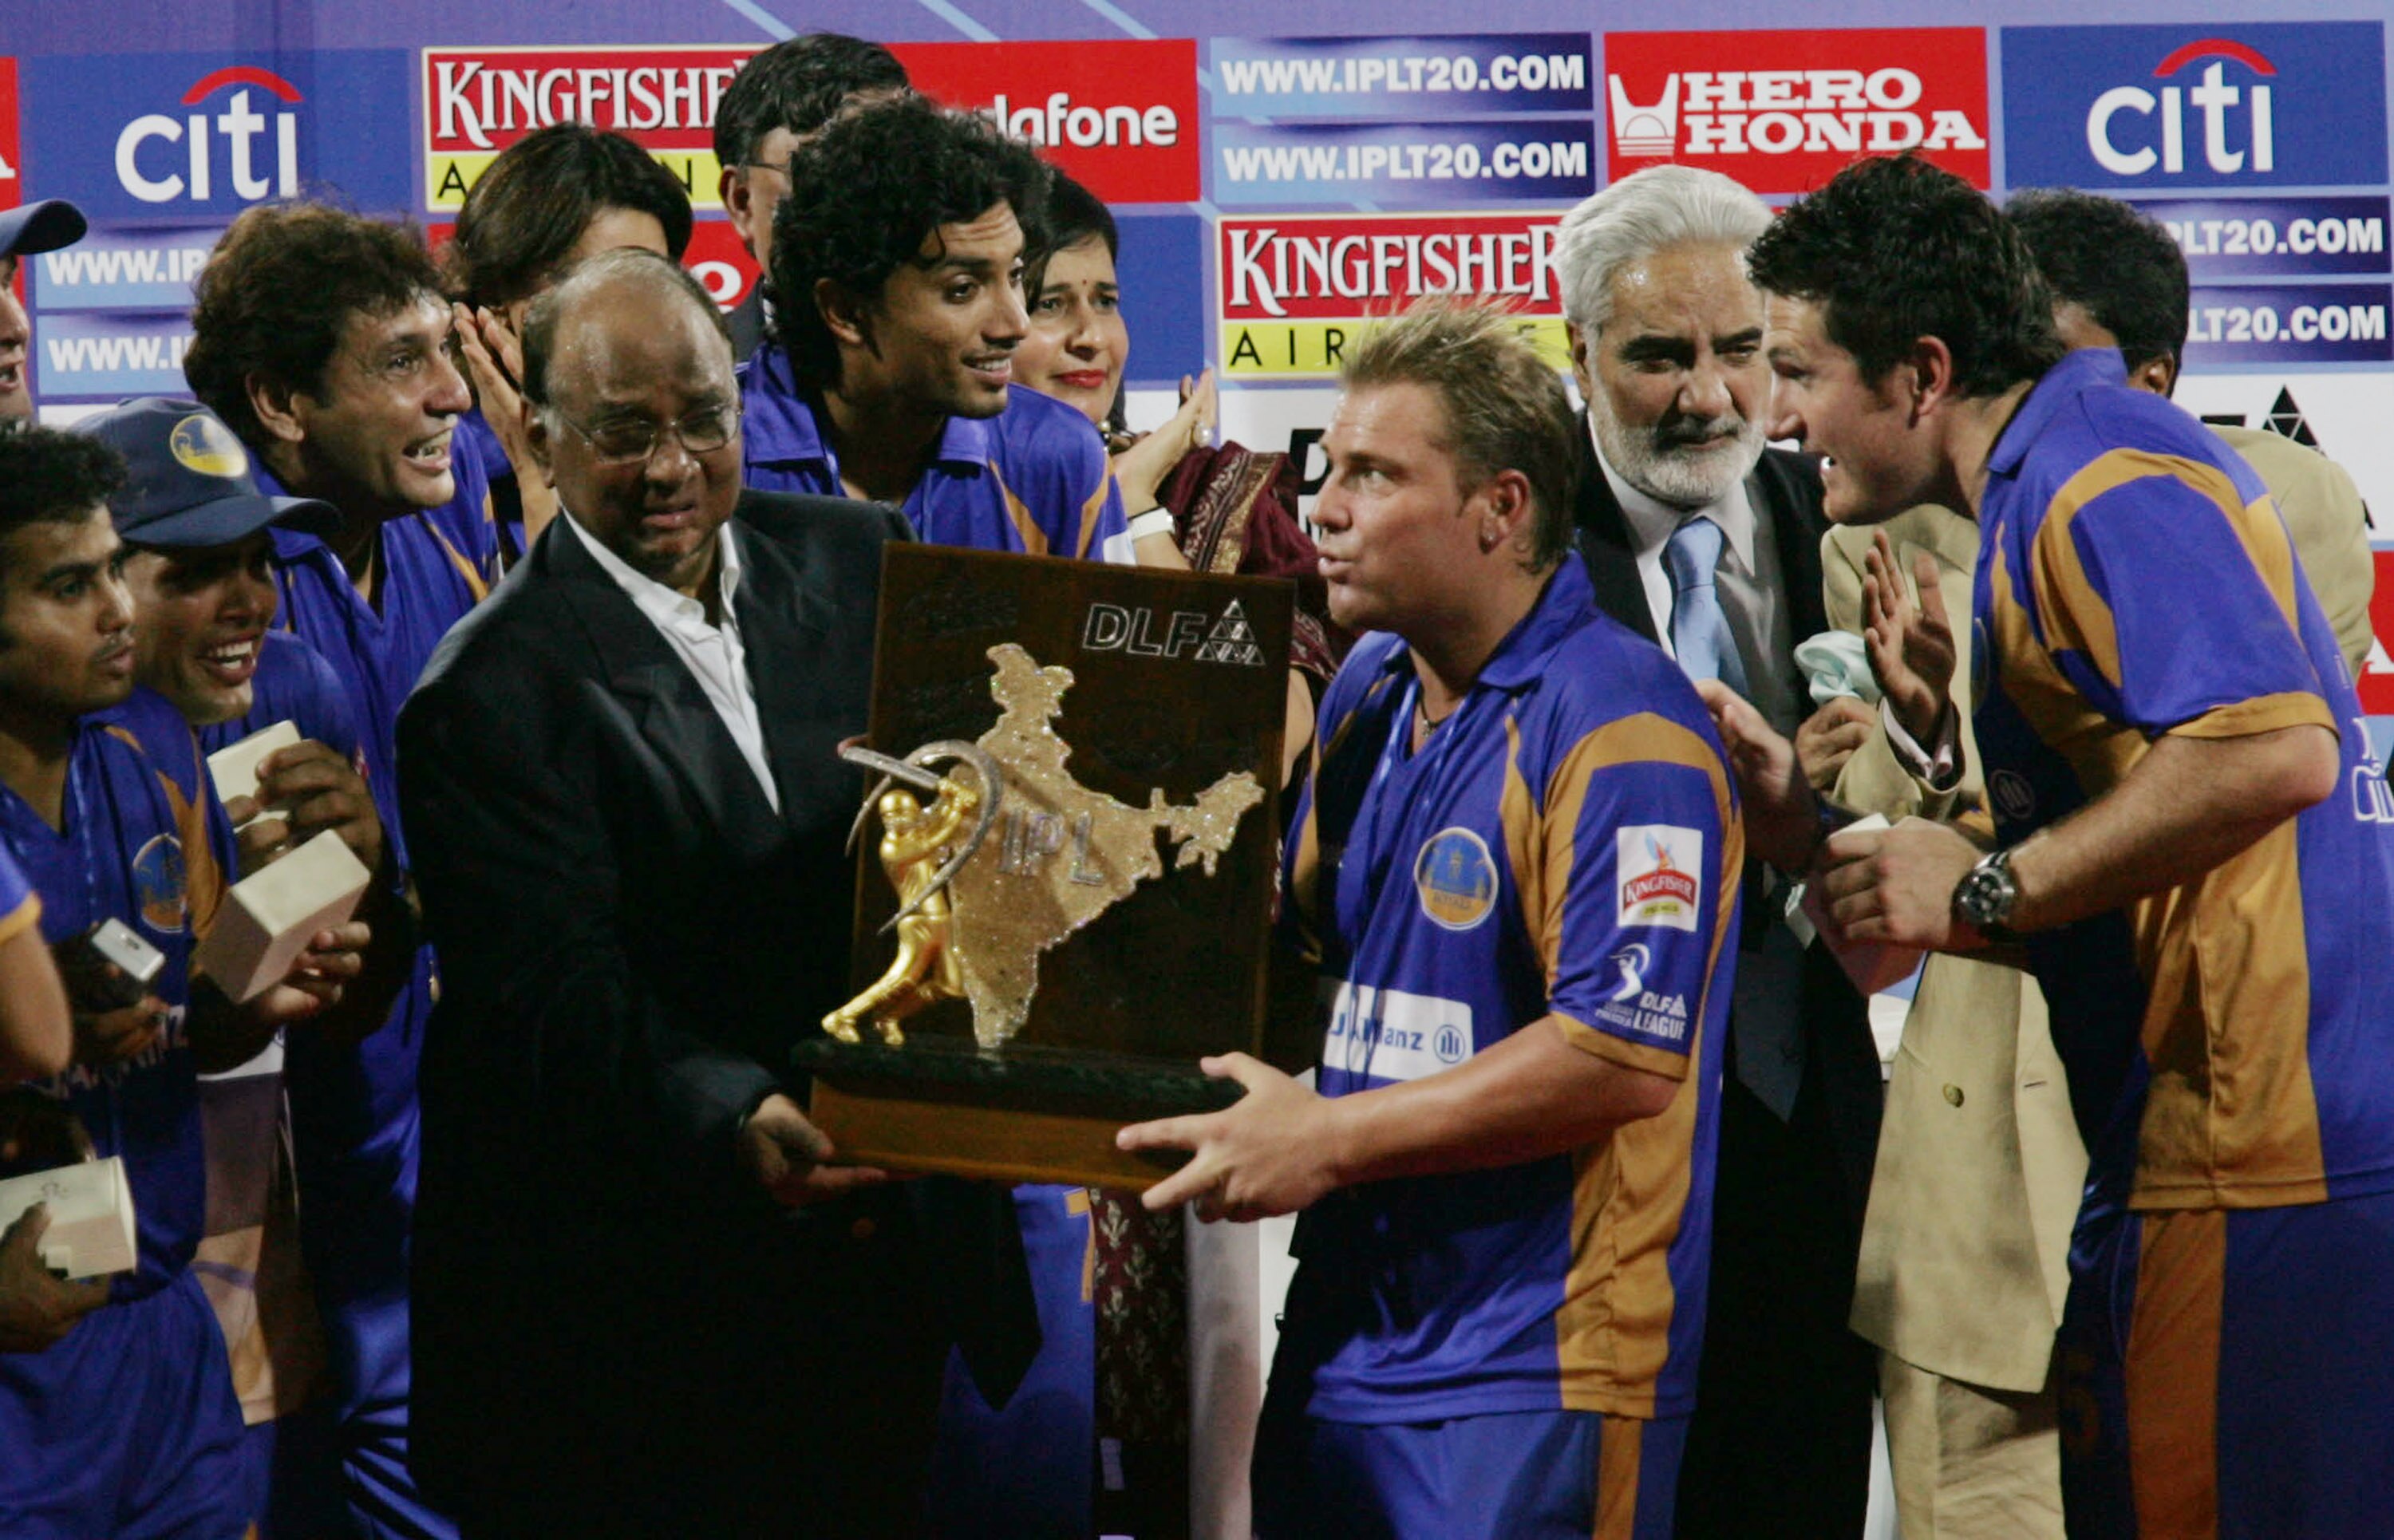 IPL 2008 Recap: அதிக விலைக்கு ஏலம் போன தல தோனி; கோப்பையை தட்டித்தூக்கிய ராஜஸ்தான்; முதல் சீசன் க்ளியர் ரீவைண்ட்